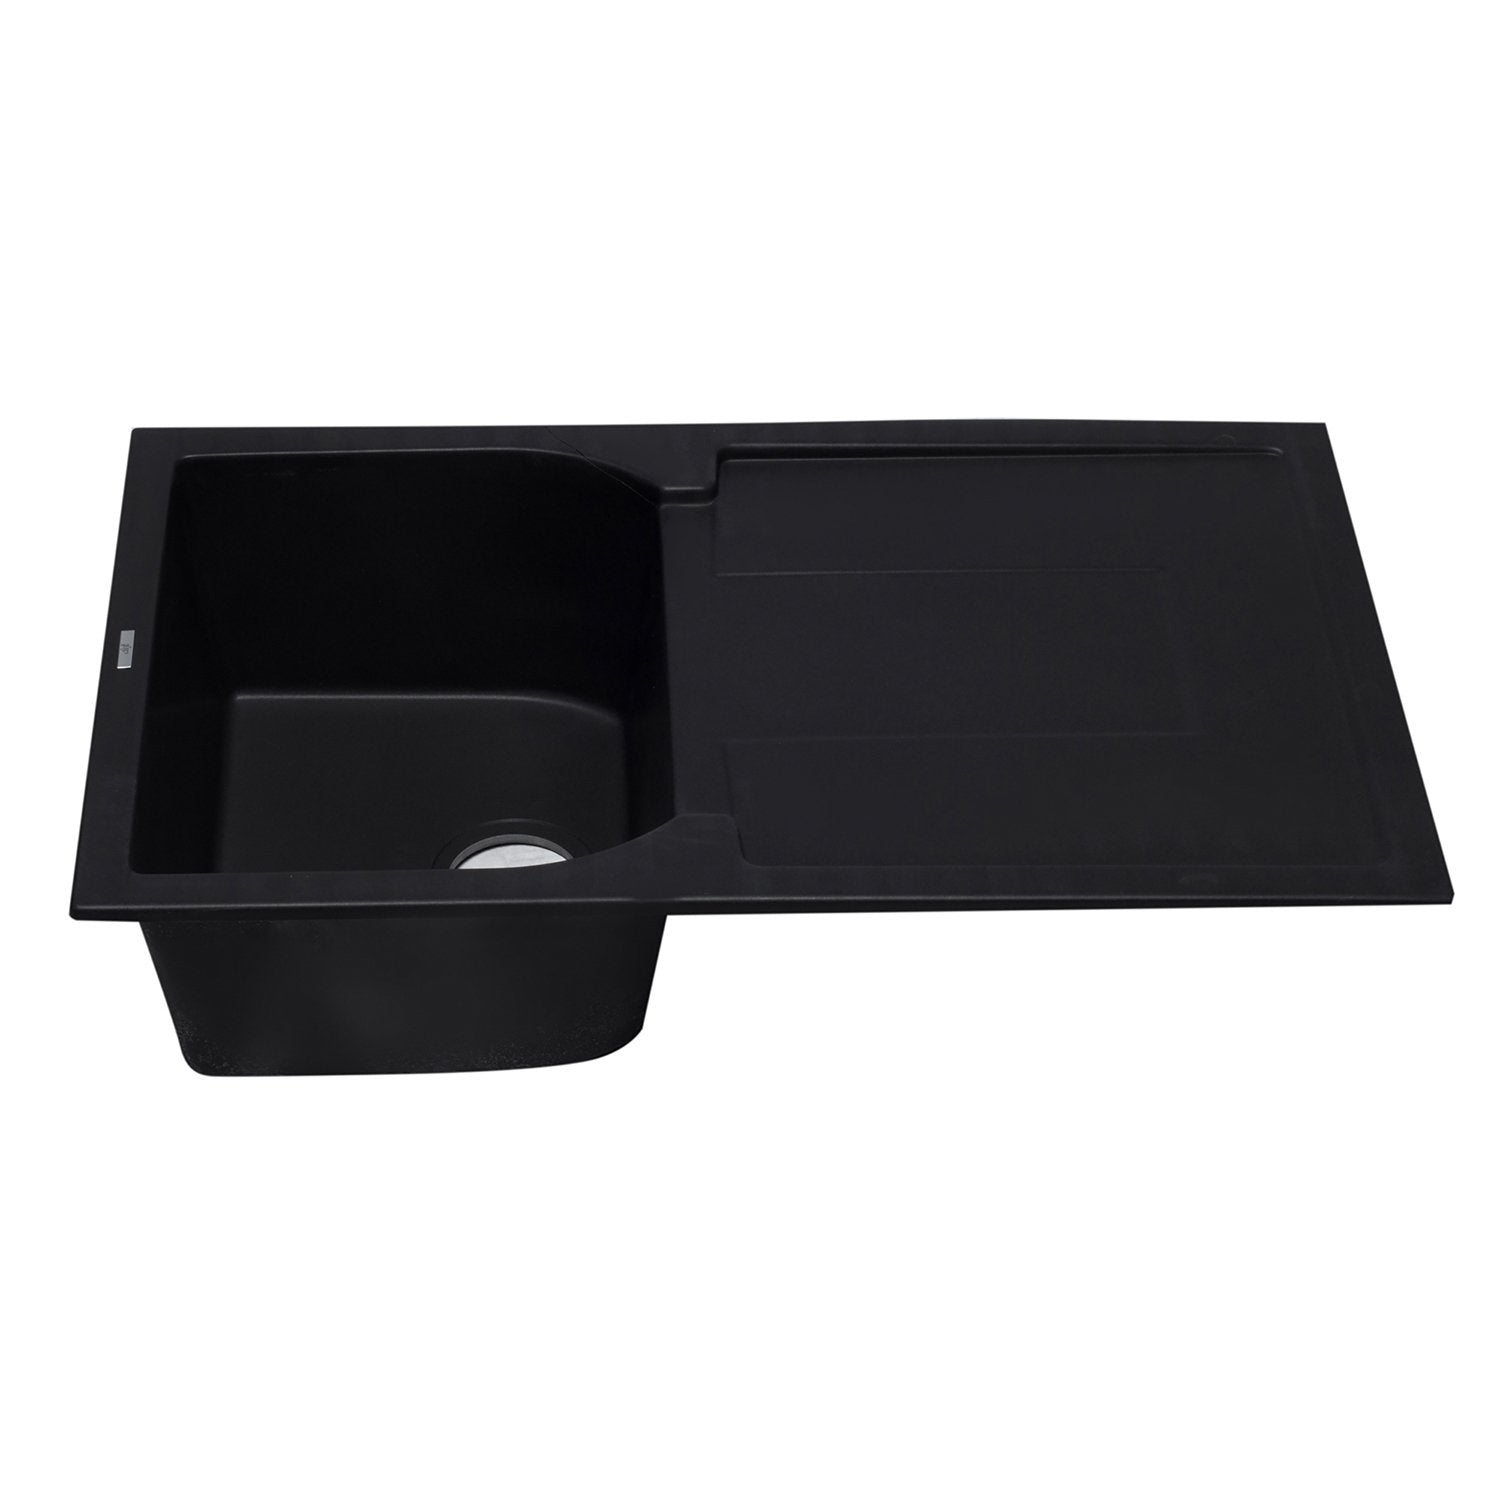 ALFI, ALFI AB1620DI-BLA Black 34" Single Bowl Granite Composite Sink with Drainboard